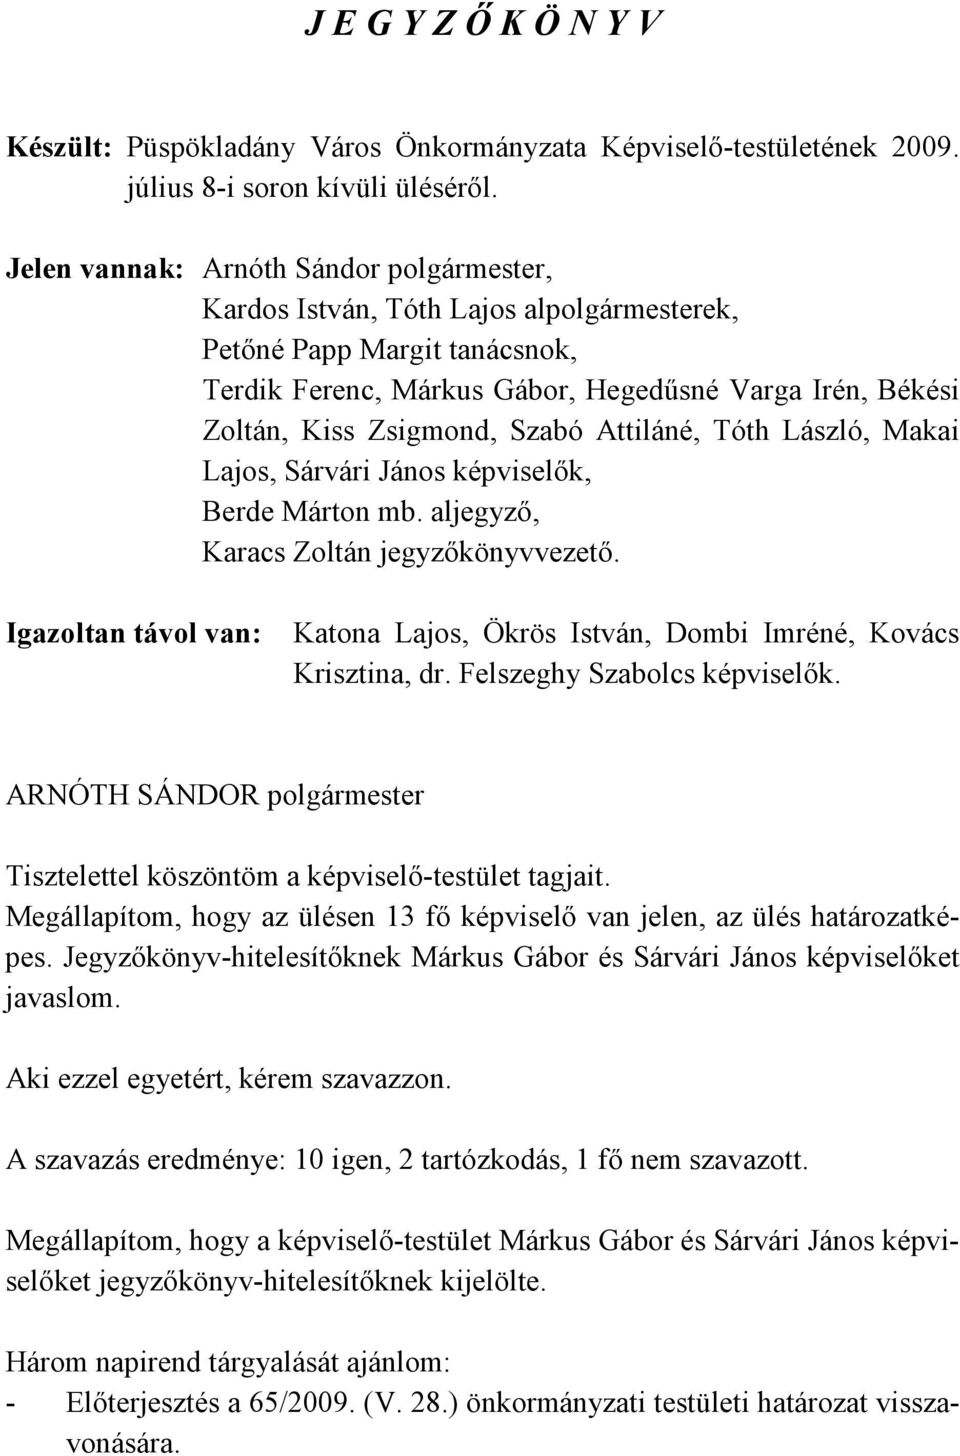 Szabó Attiláné, Tóth László, Makai Lajos, Sárvári János képviselők, Berde Márton mb. aljegyző, Karacs Zoltán jegyzőkönyvvezető.